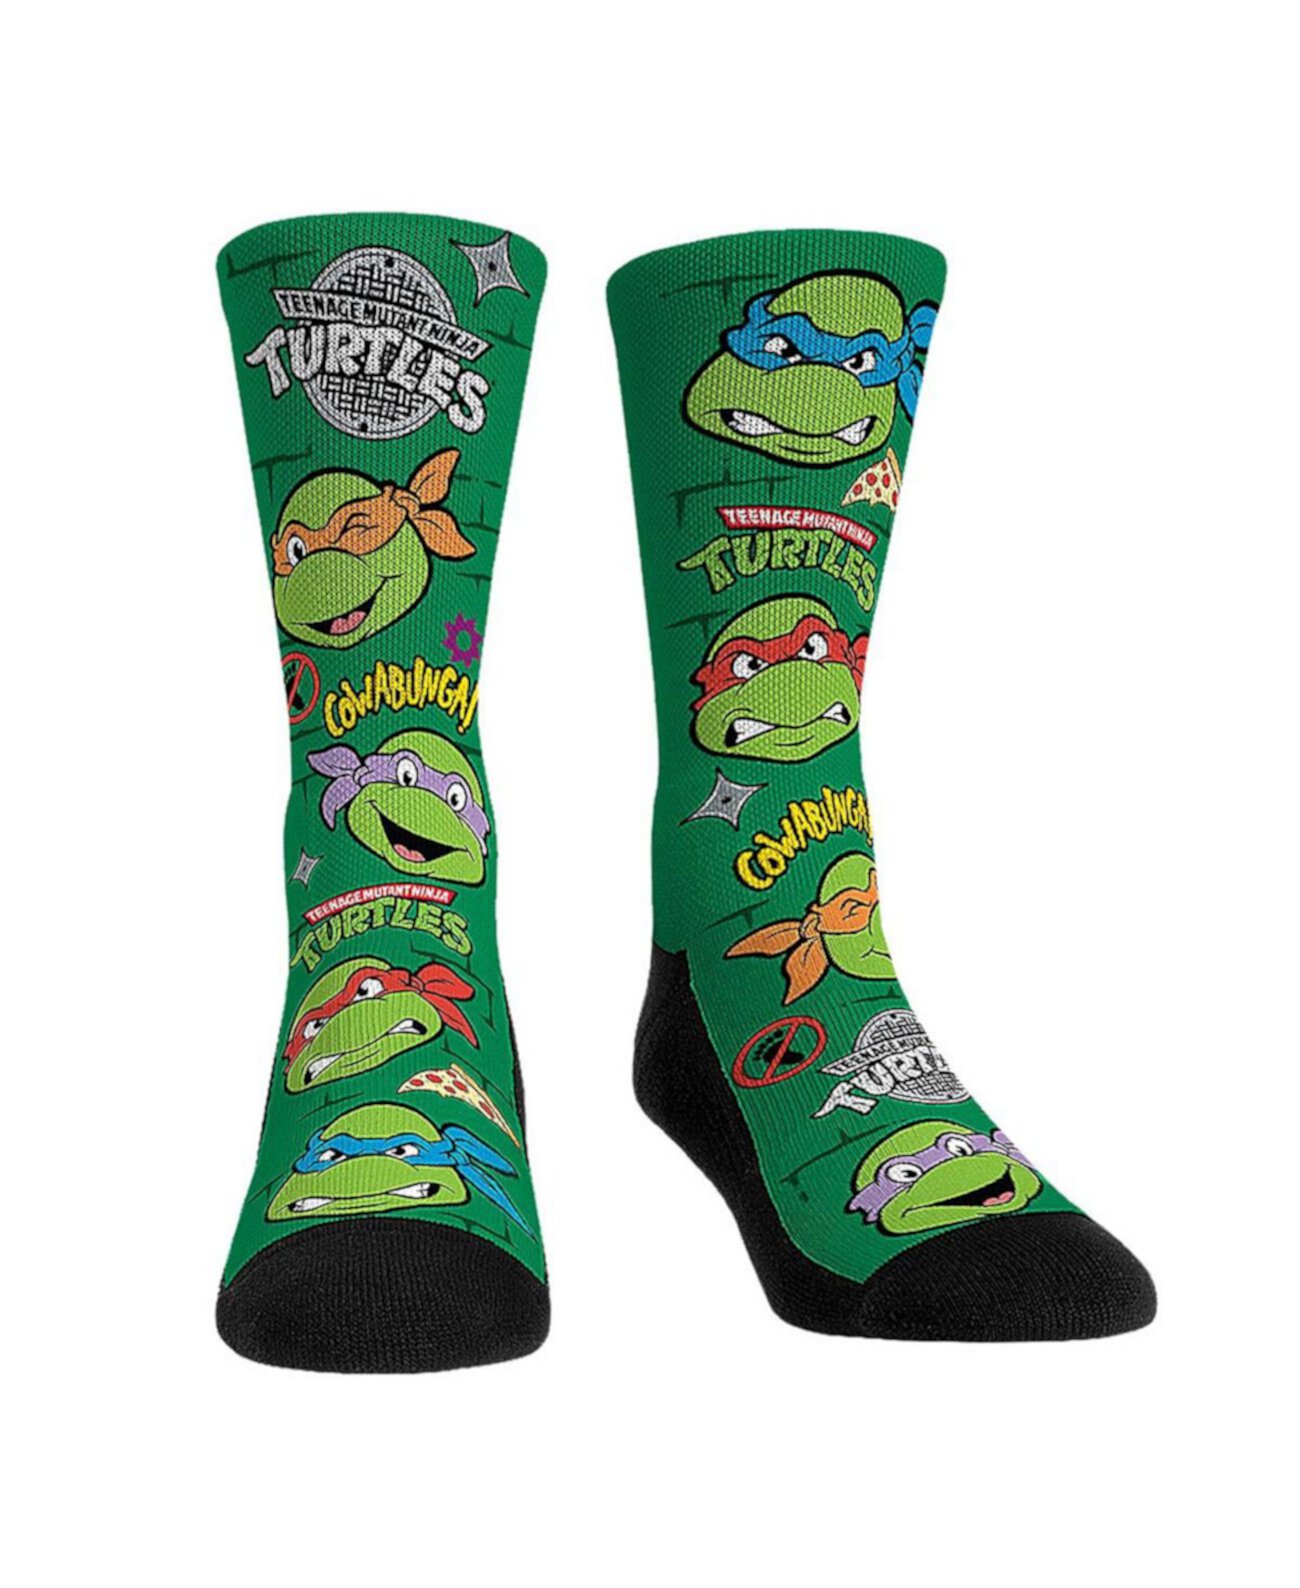 Мужские и женские носки Teenage Mutant Ninja Turtles All Over Icons Crew Socks Rock 'Em